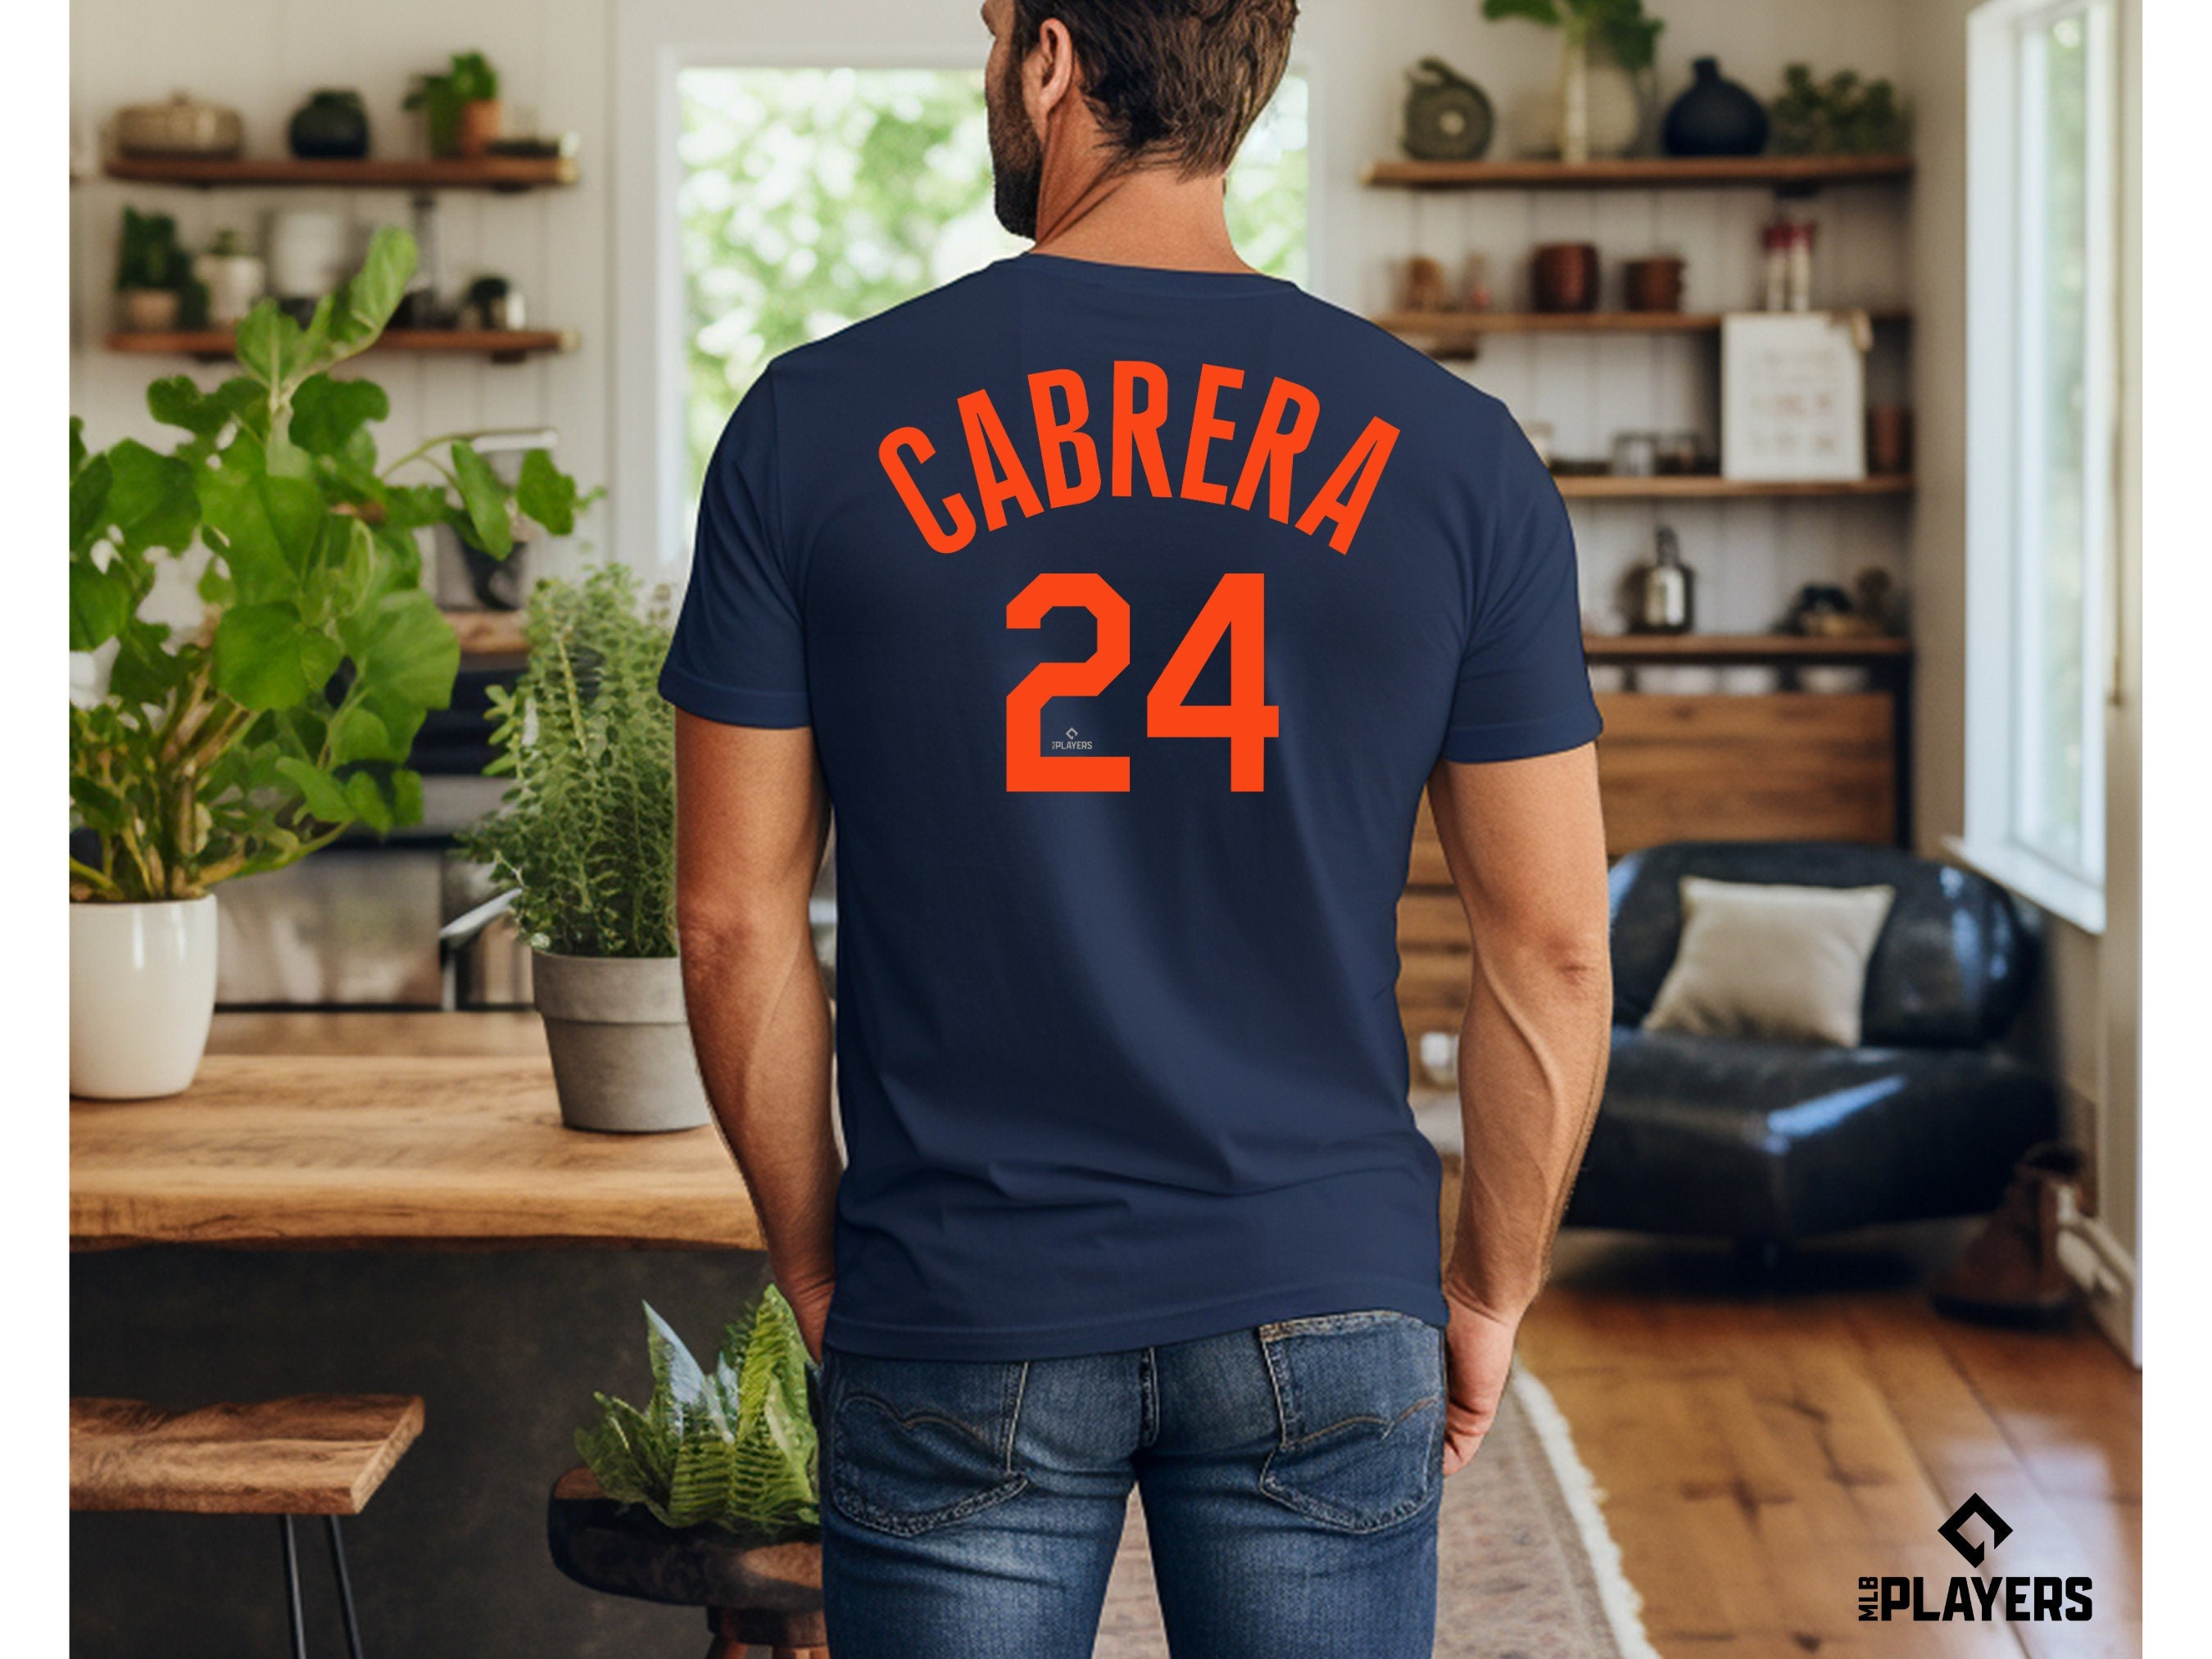 Miguel Cabrera Shirt 